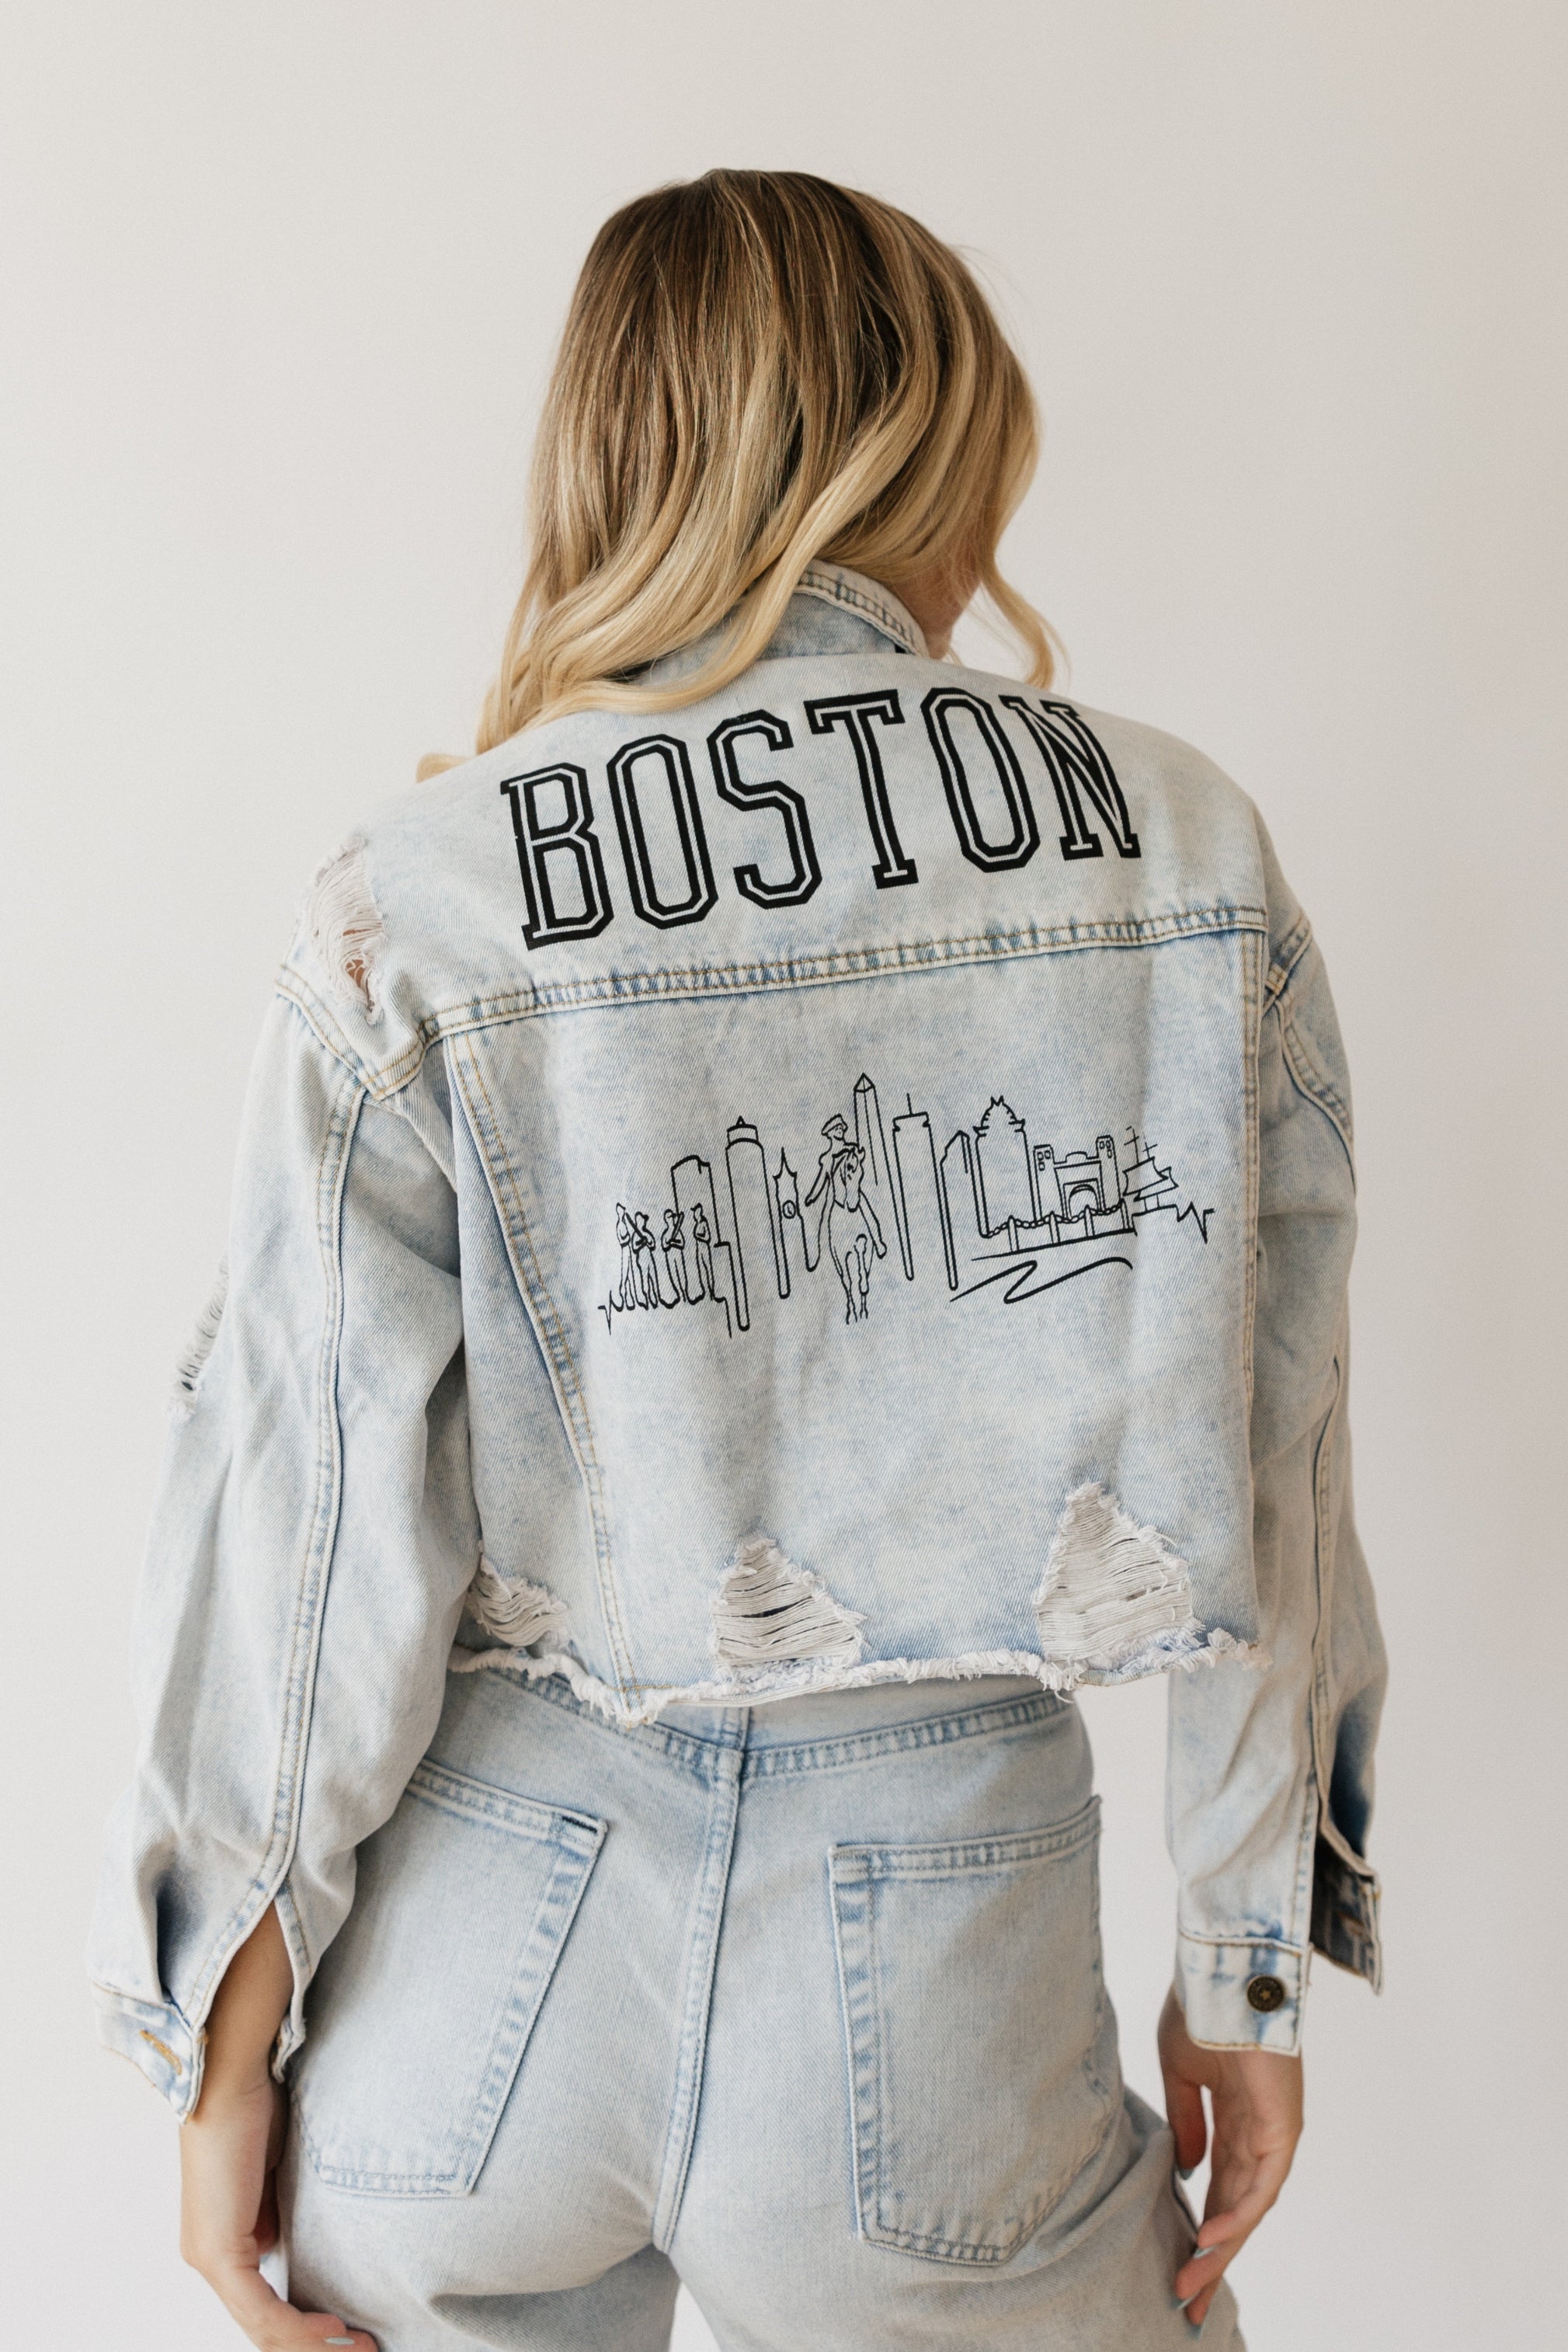 Boston Skyline Denim Jacket